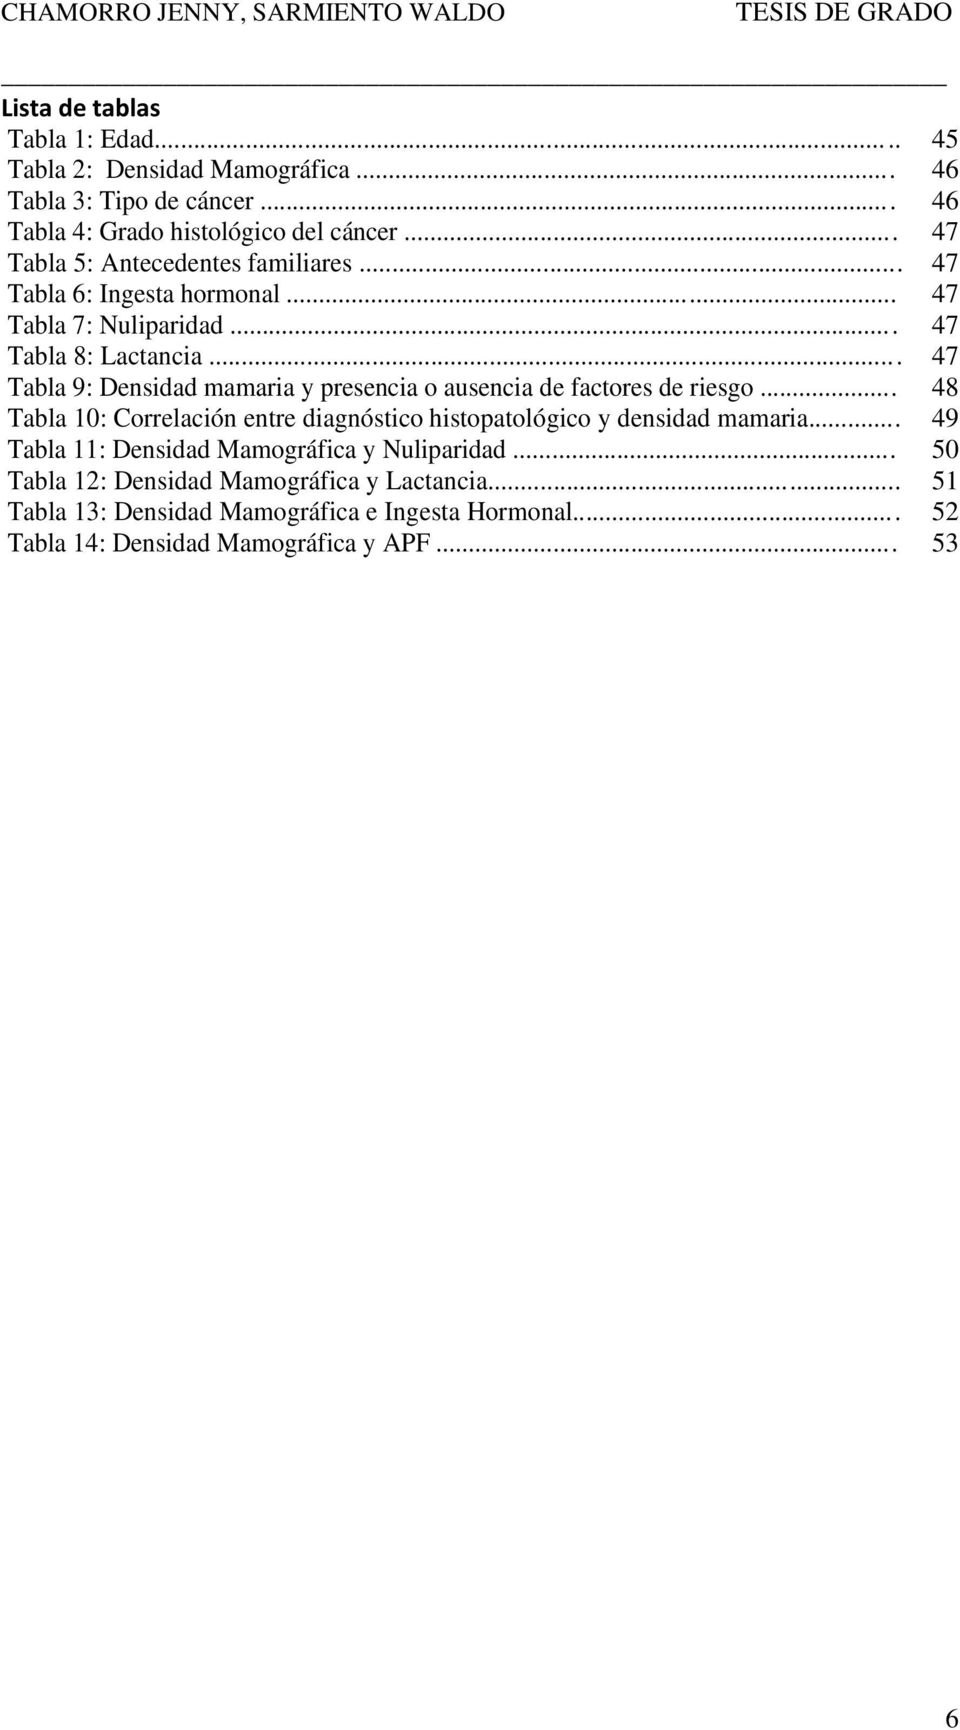 .. 47 Tabla 9: Densidad mamaria y presencia o ausencia de factores de riesgo... 48 Tabla 10: Correlación entre diagnóstico histopatológico y densidad mamaria.